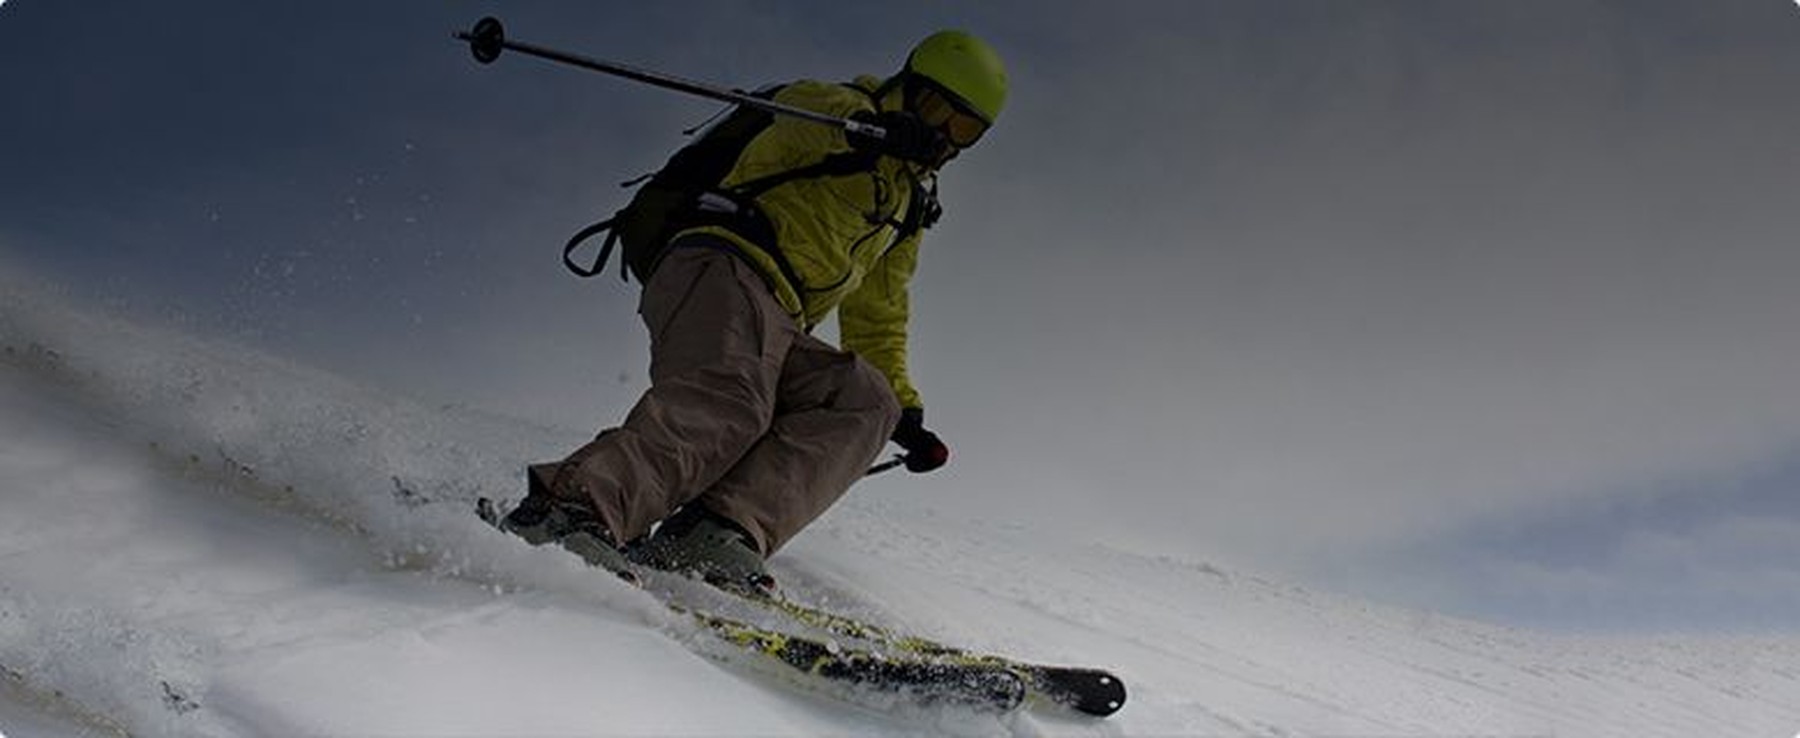 Har du några tankar på att åka skidor?